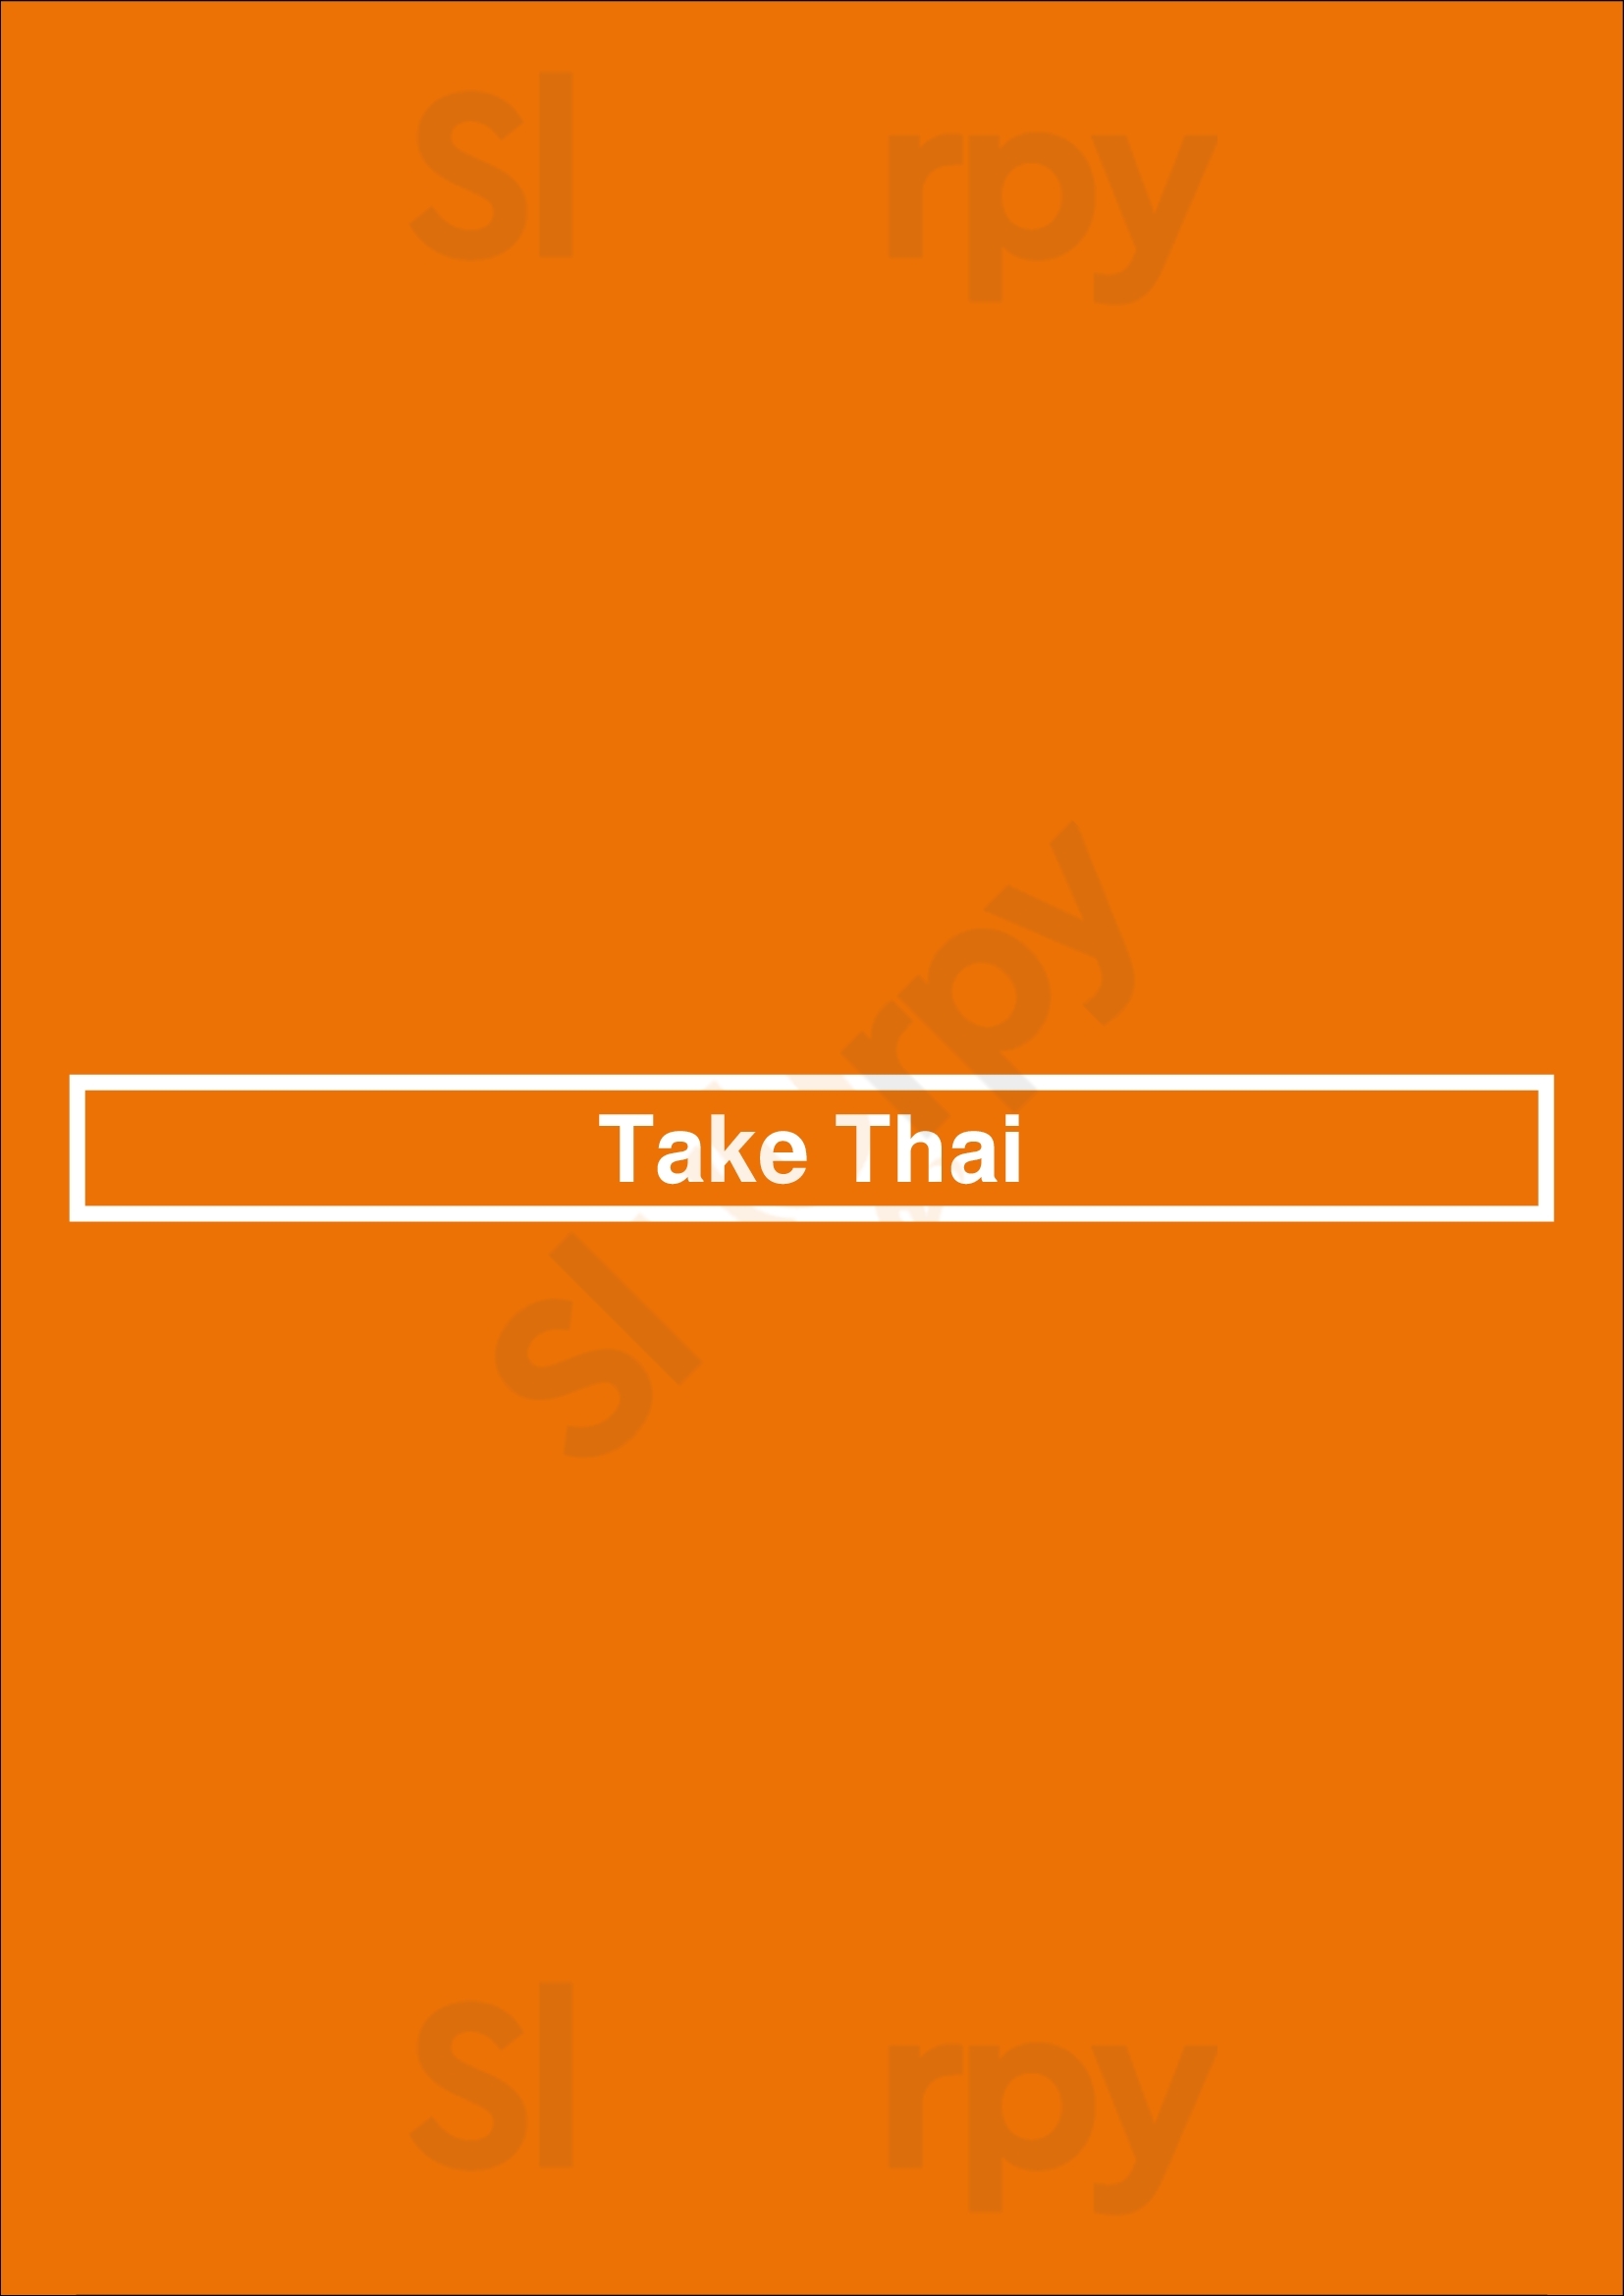 Take Thai Amsterdam Menu - 1